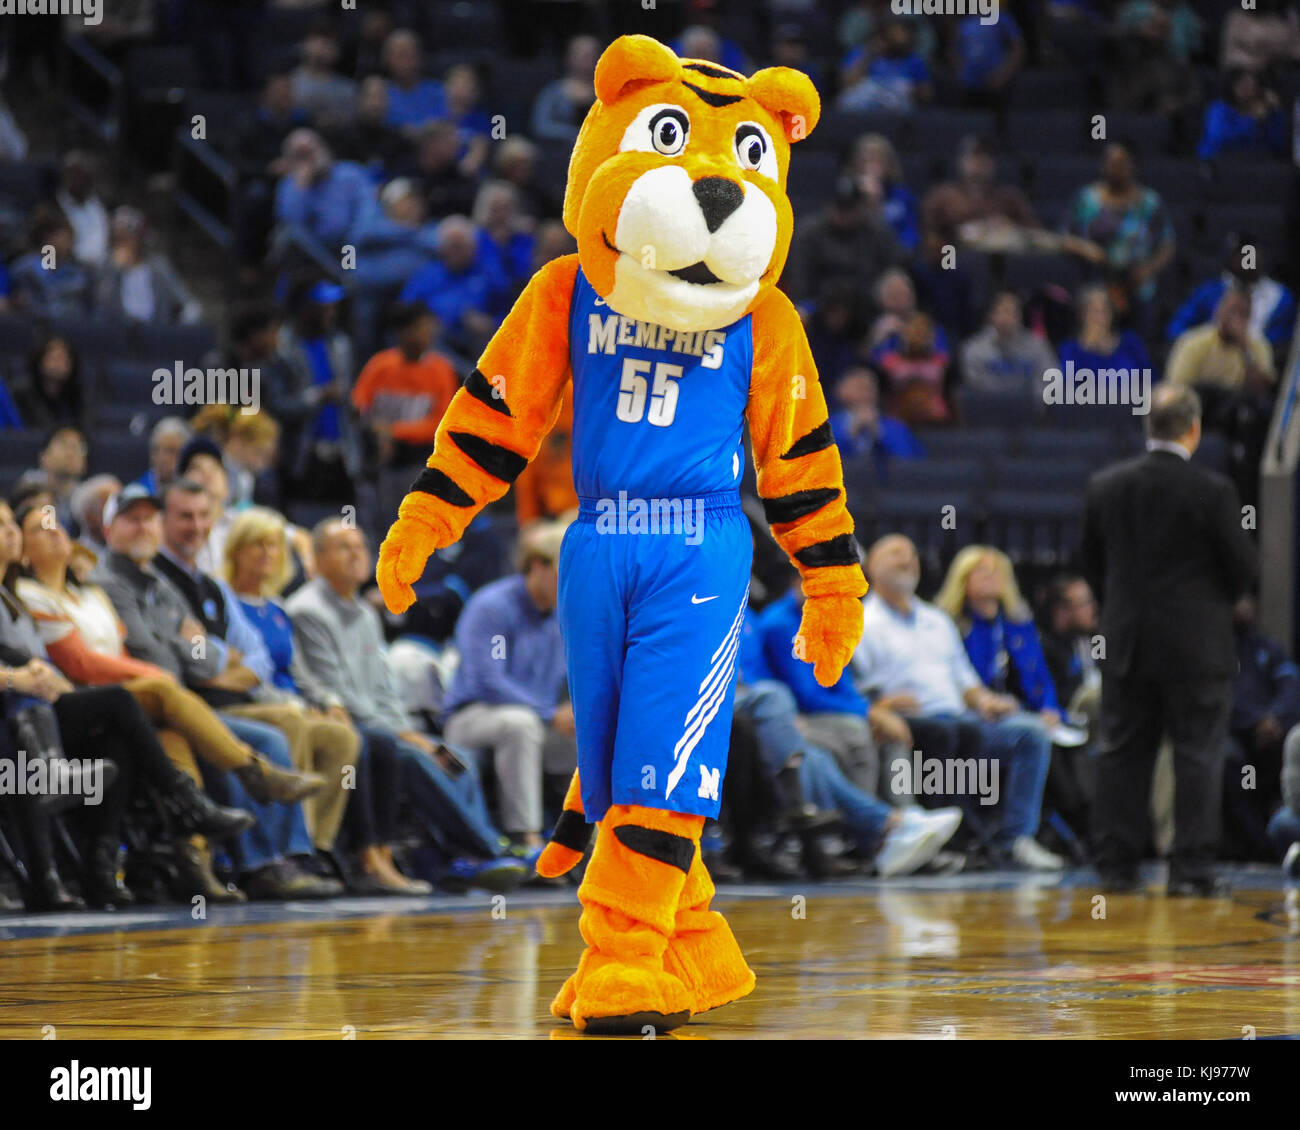 November 20, 2017; Memphis, TN, USA; Memphis Tigers Mascot